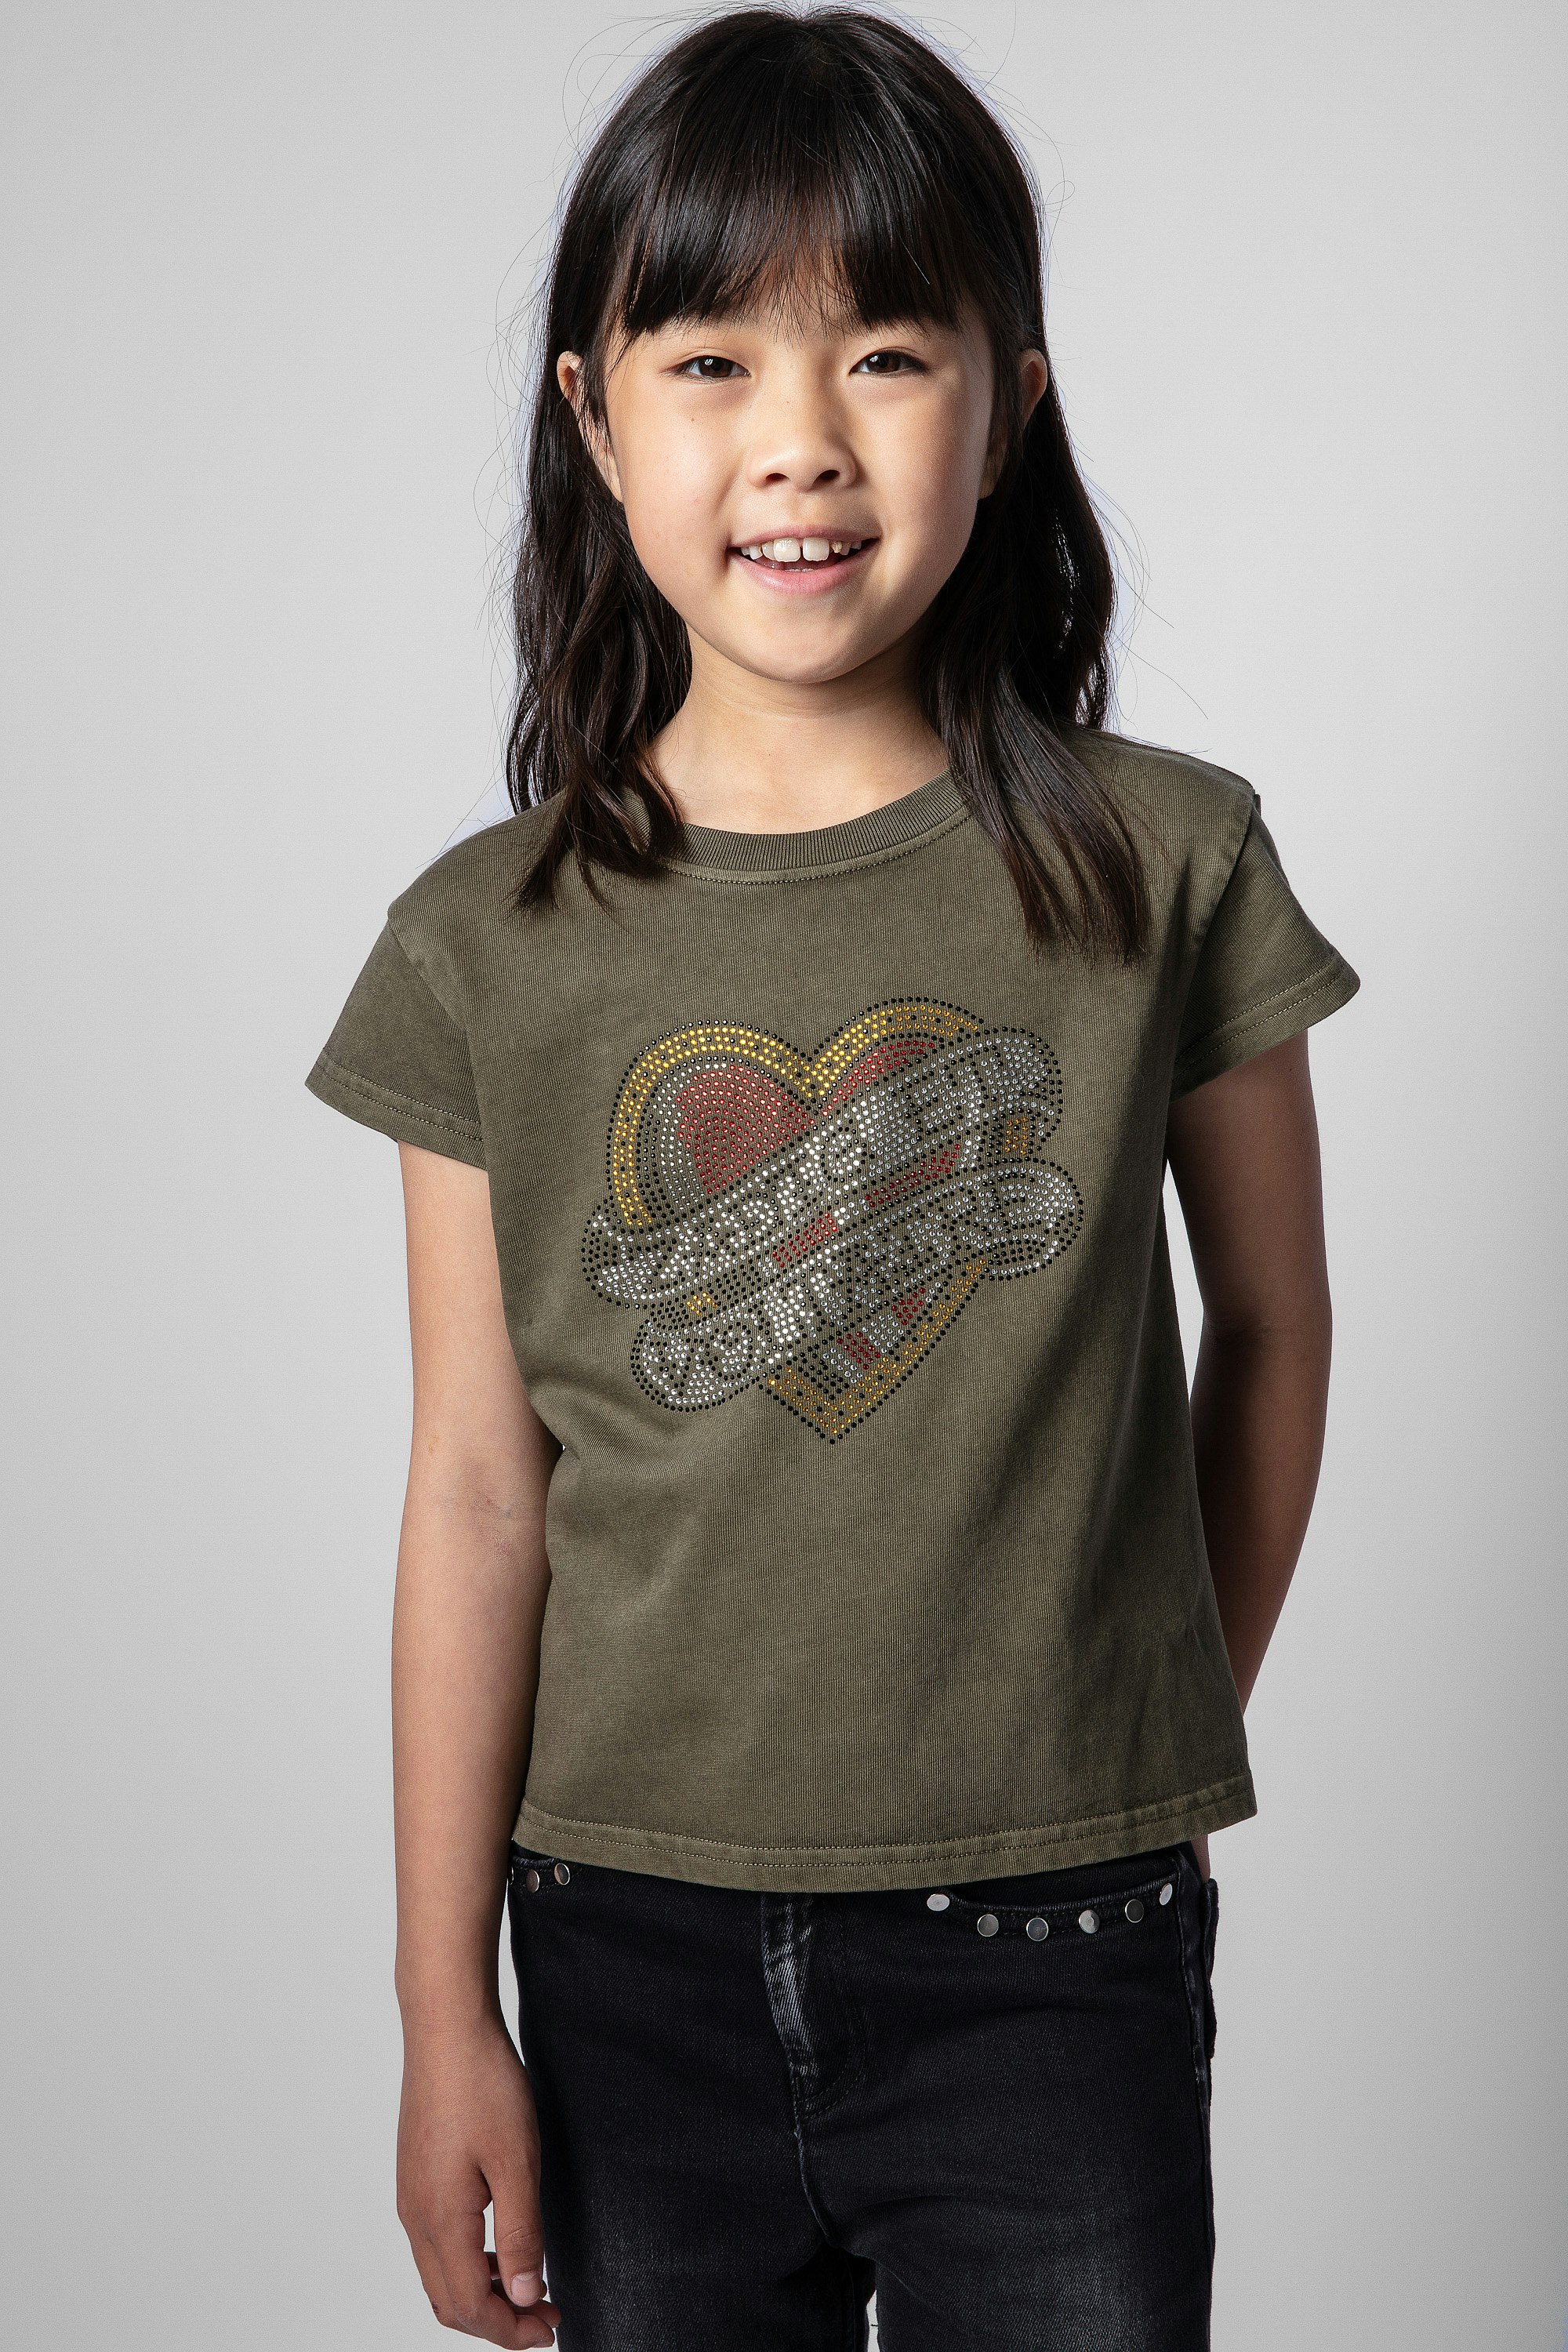 Kinder-T-Shirt Anie 